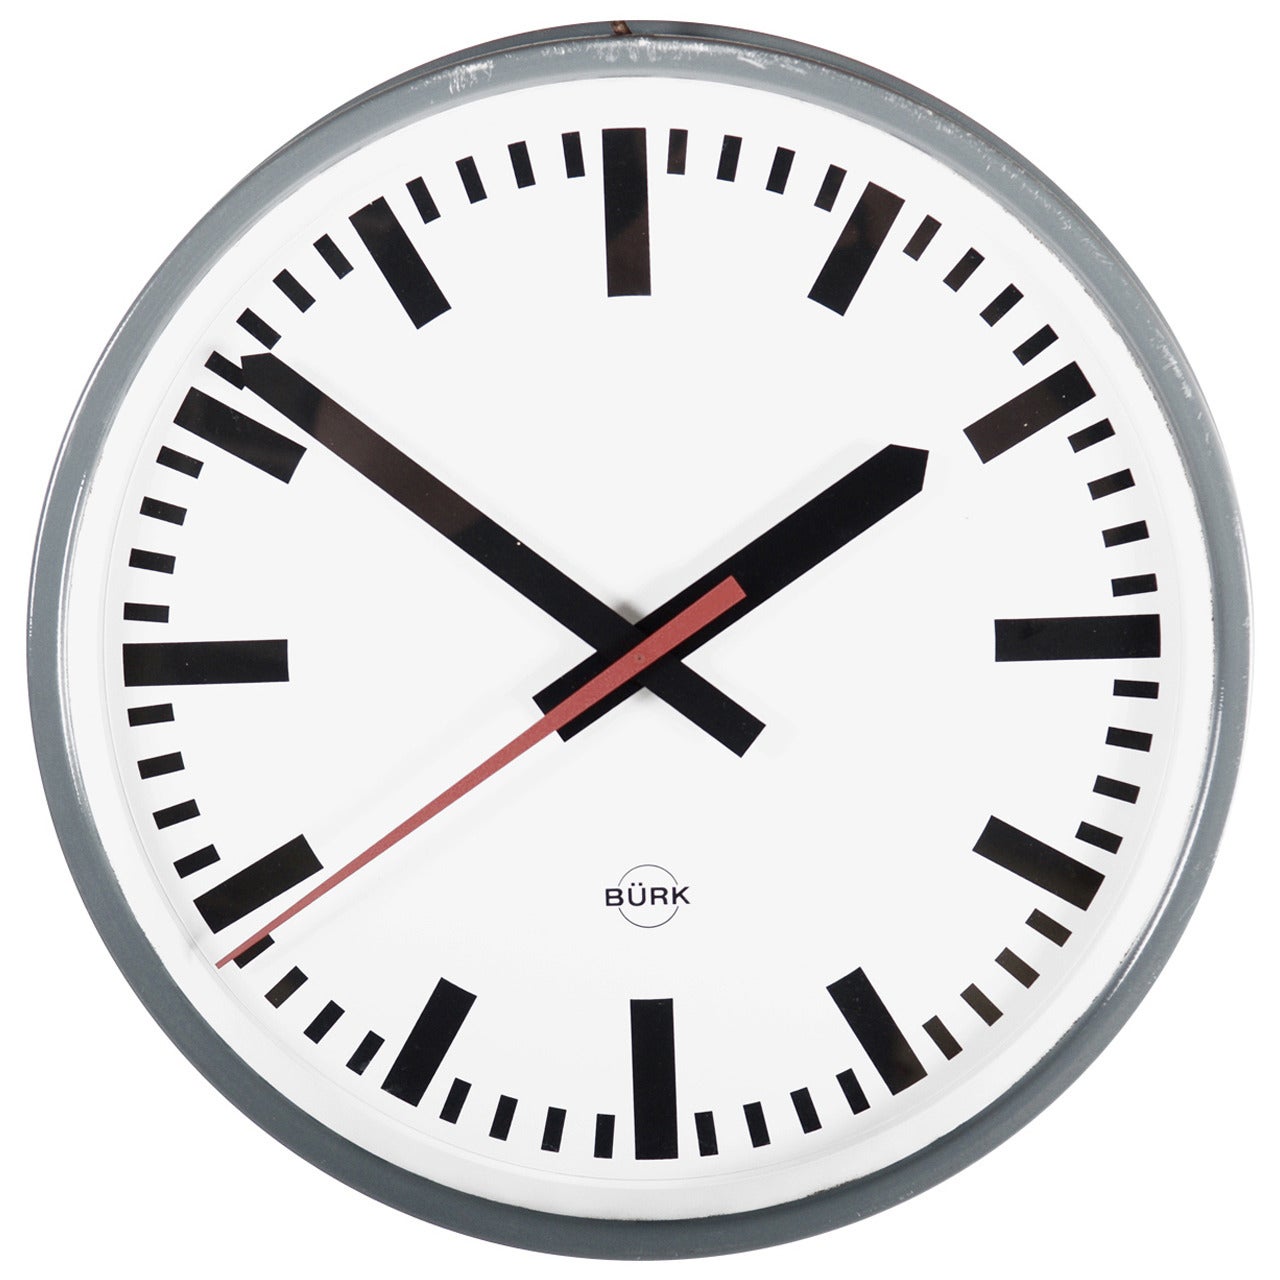 Large German Industrial Clock, Labeled Bürk